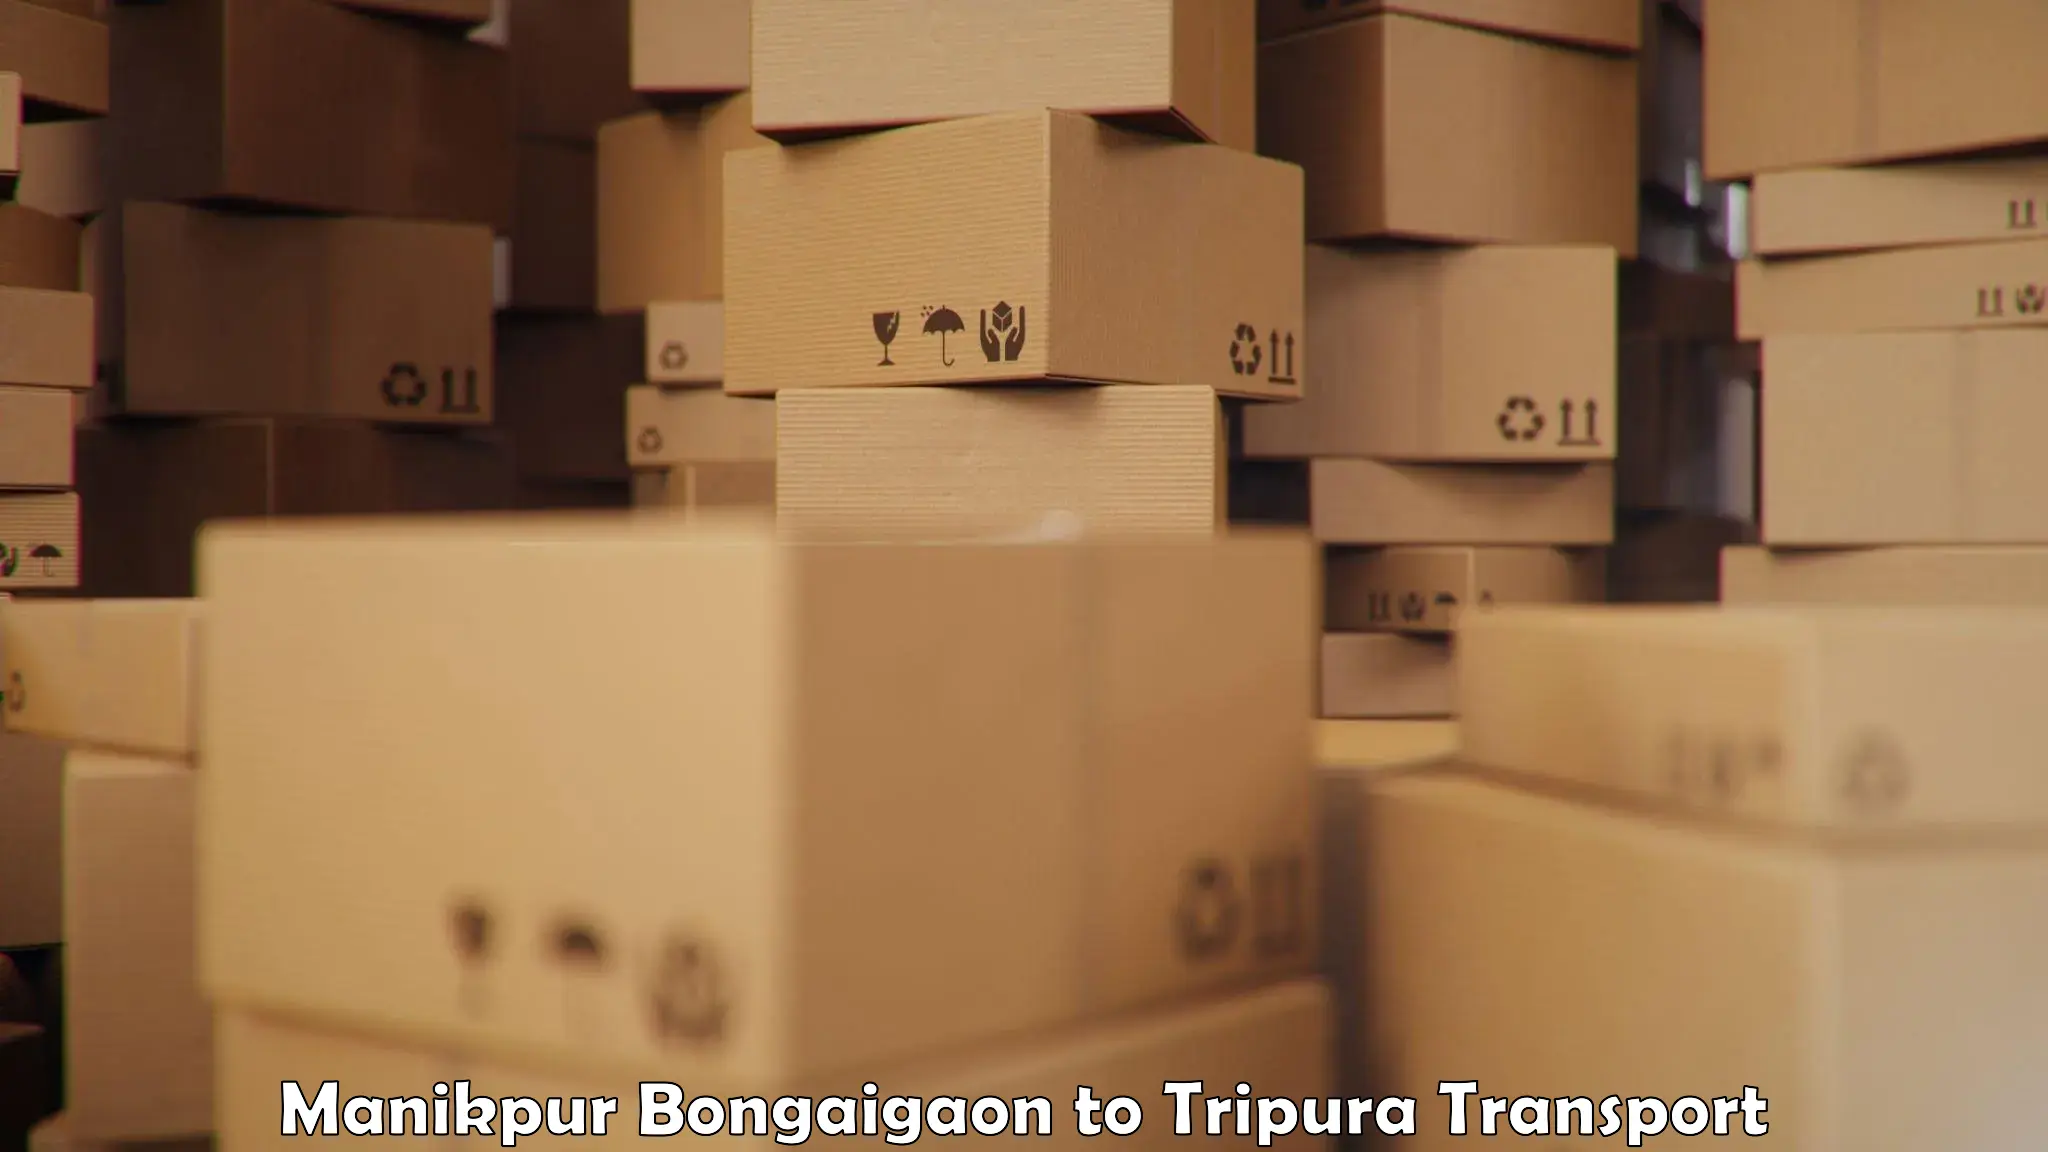 Cargo train transport services in Manikpur Bongaigaon to Amarpur Gomati